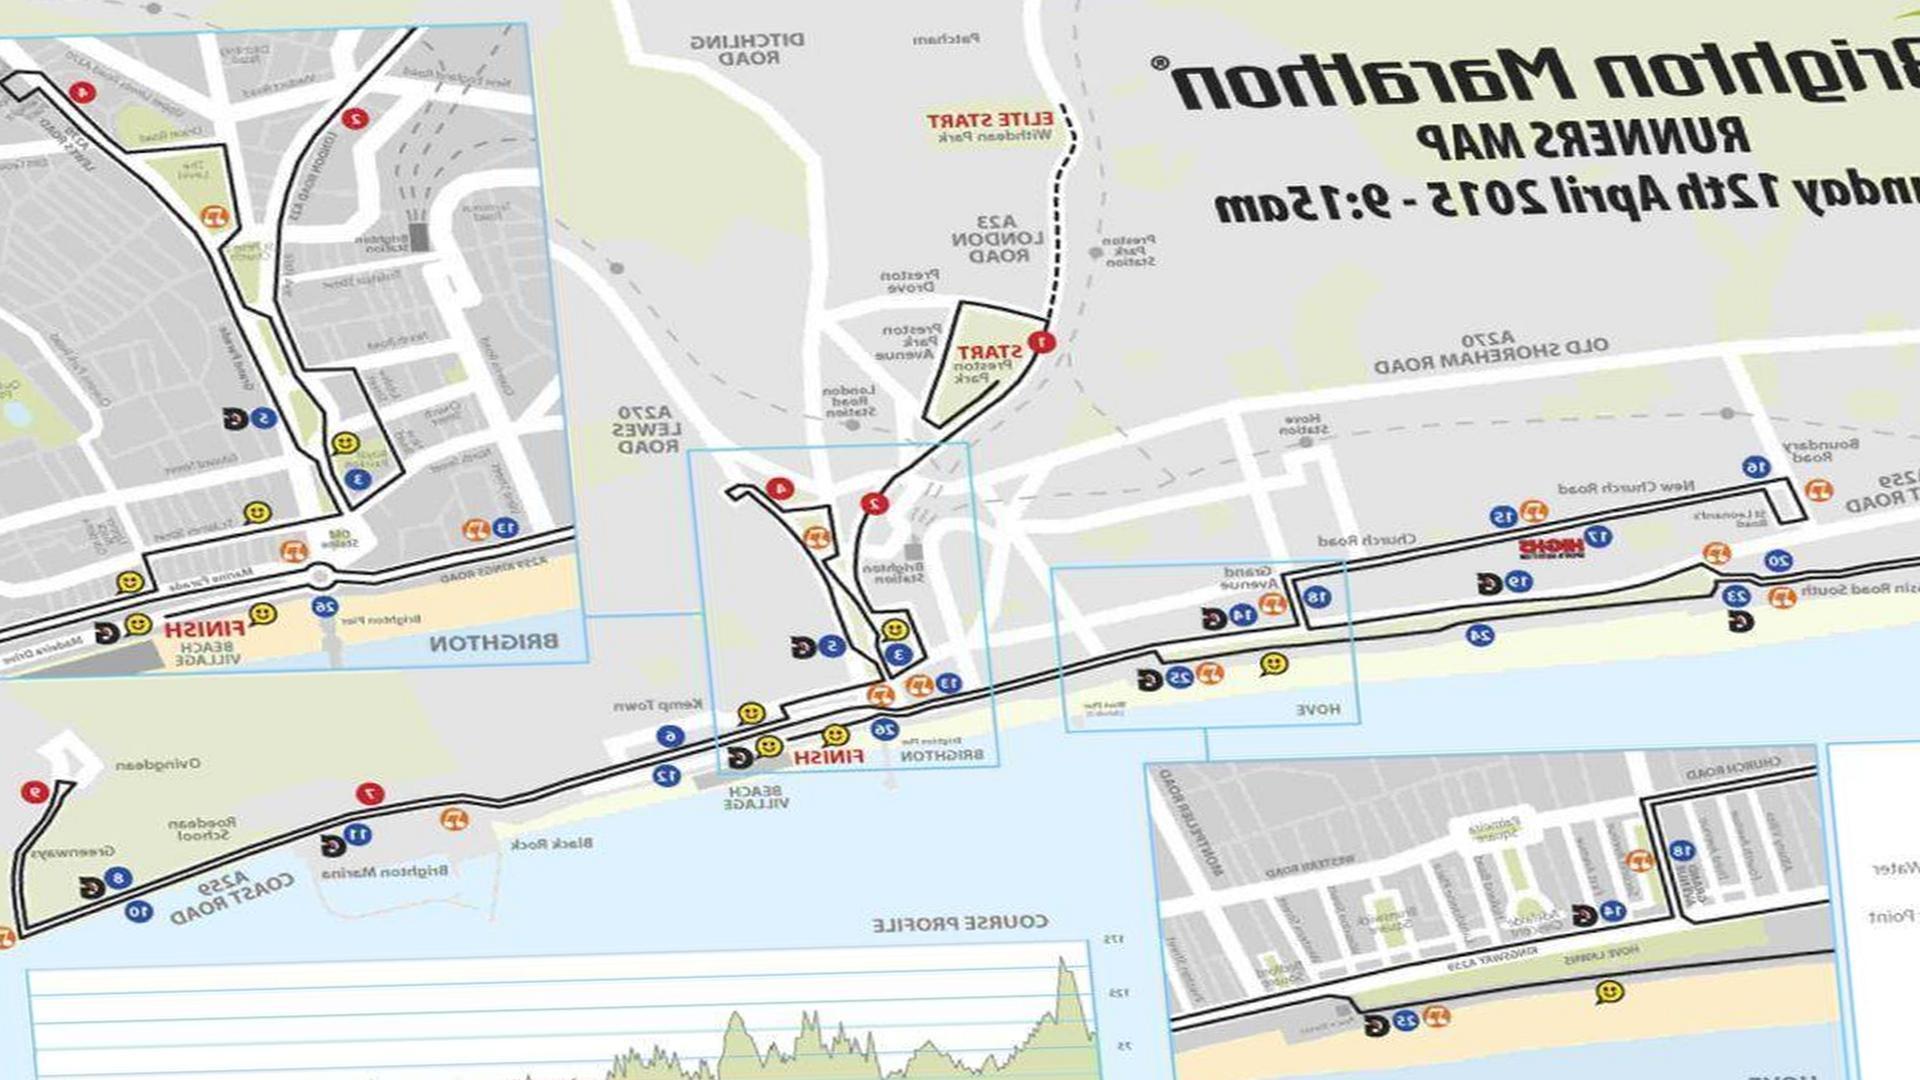 Brighton Marathon Guide